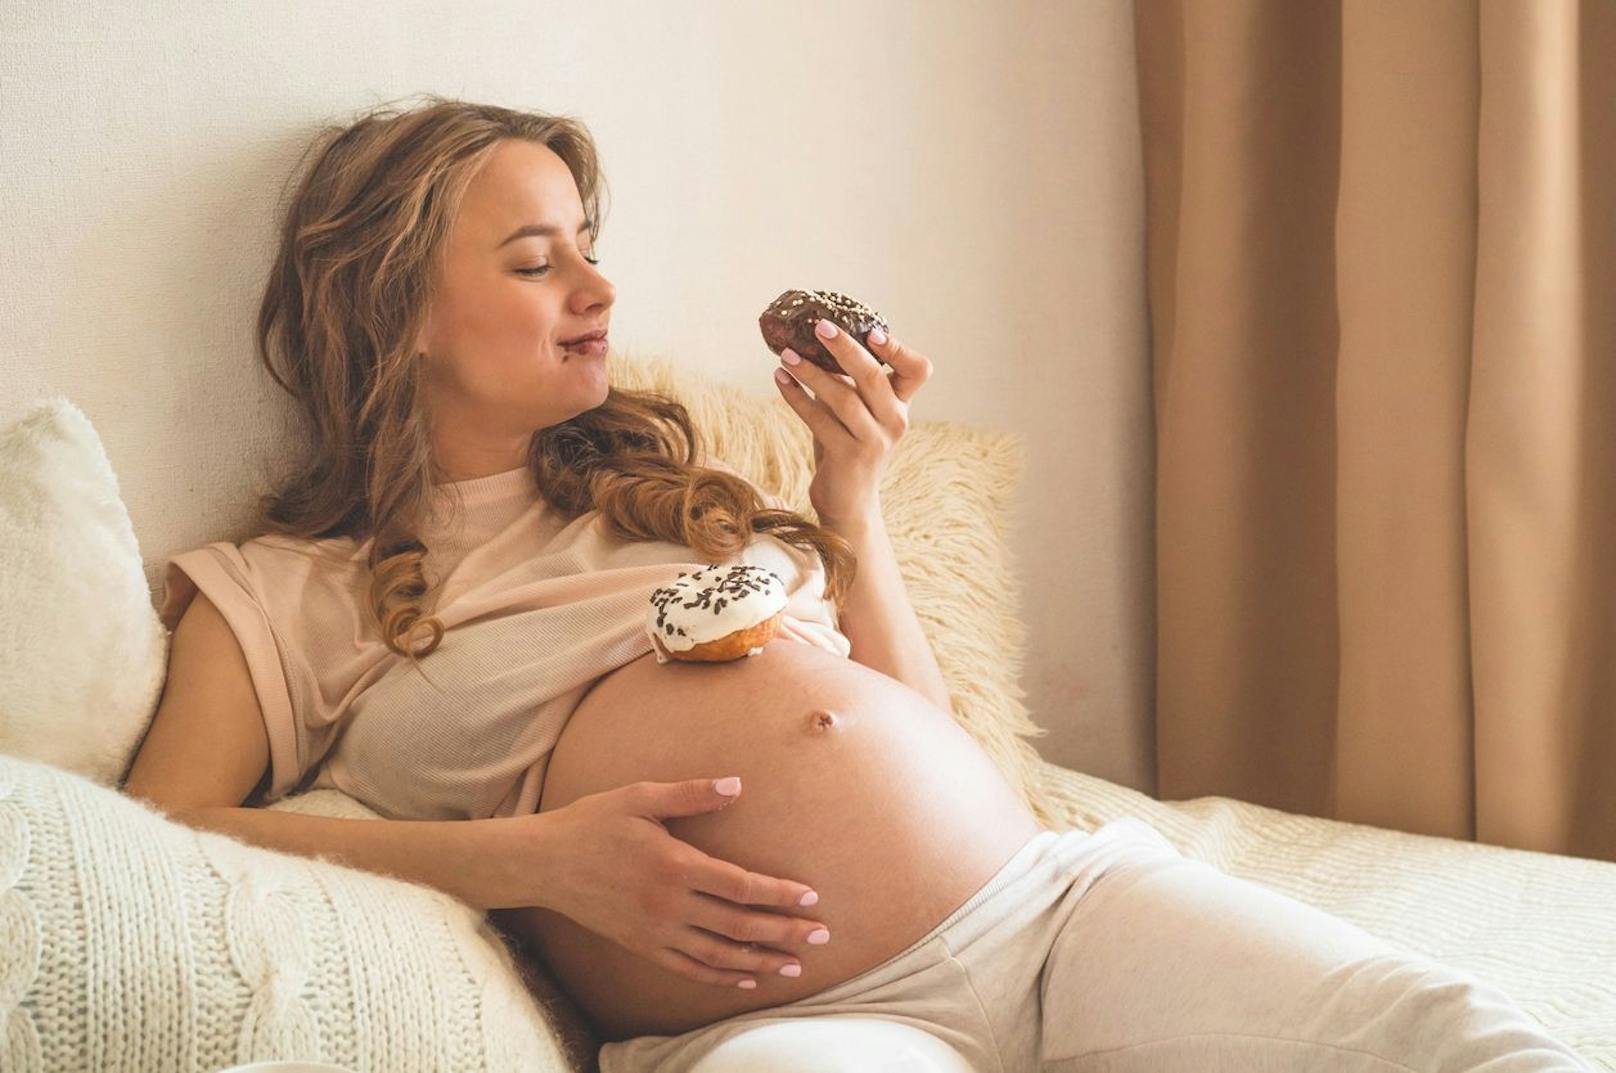 Kann man es bei Heißhunger und Gelüsten während der Schwangerschaft zu weit treiben? Manche Promis verspürten Lust auf ganz eigenartige Kombinationen.